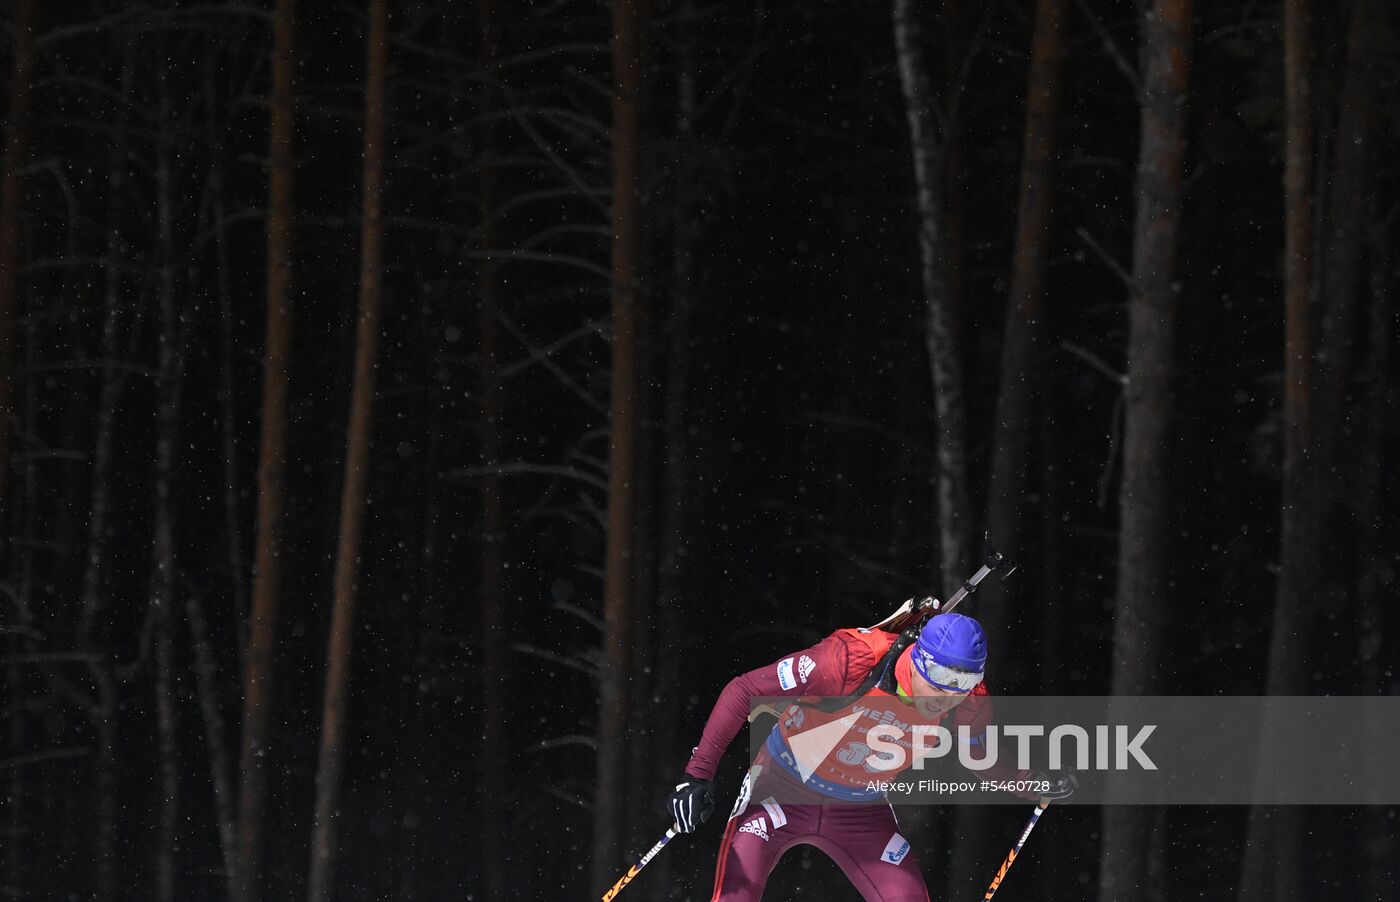 Biathlon World Cup 9. Men. Sprint